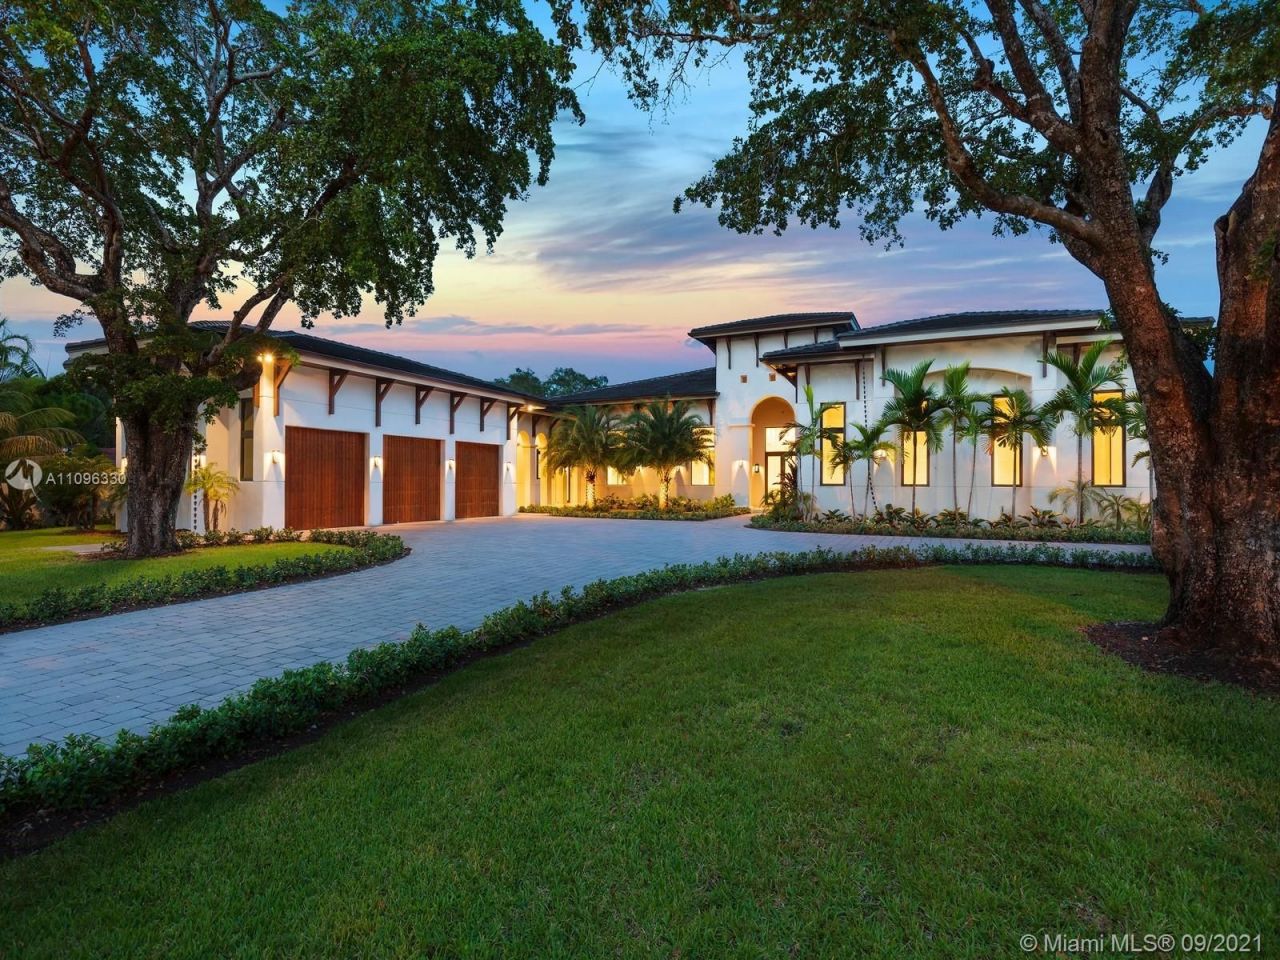 Villa en Miami, Estados Unidos, 650 m2 - imagen 1